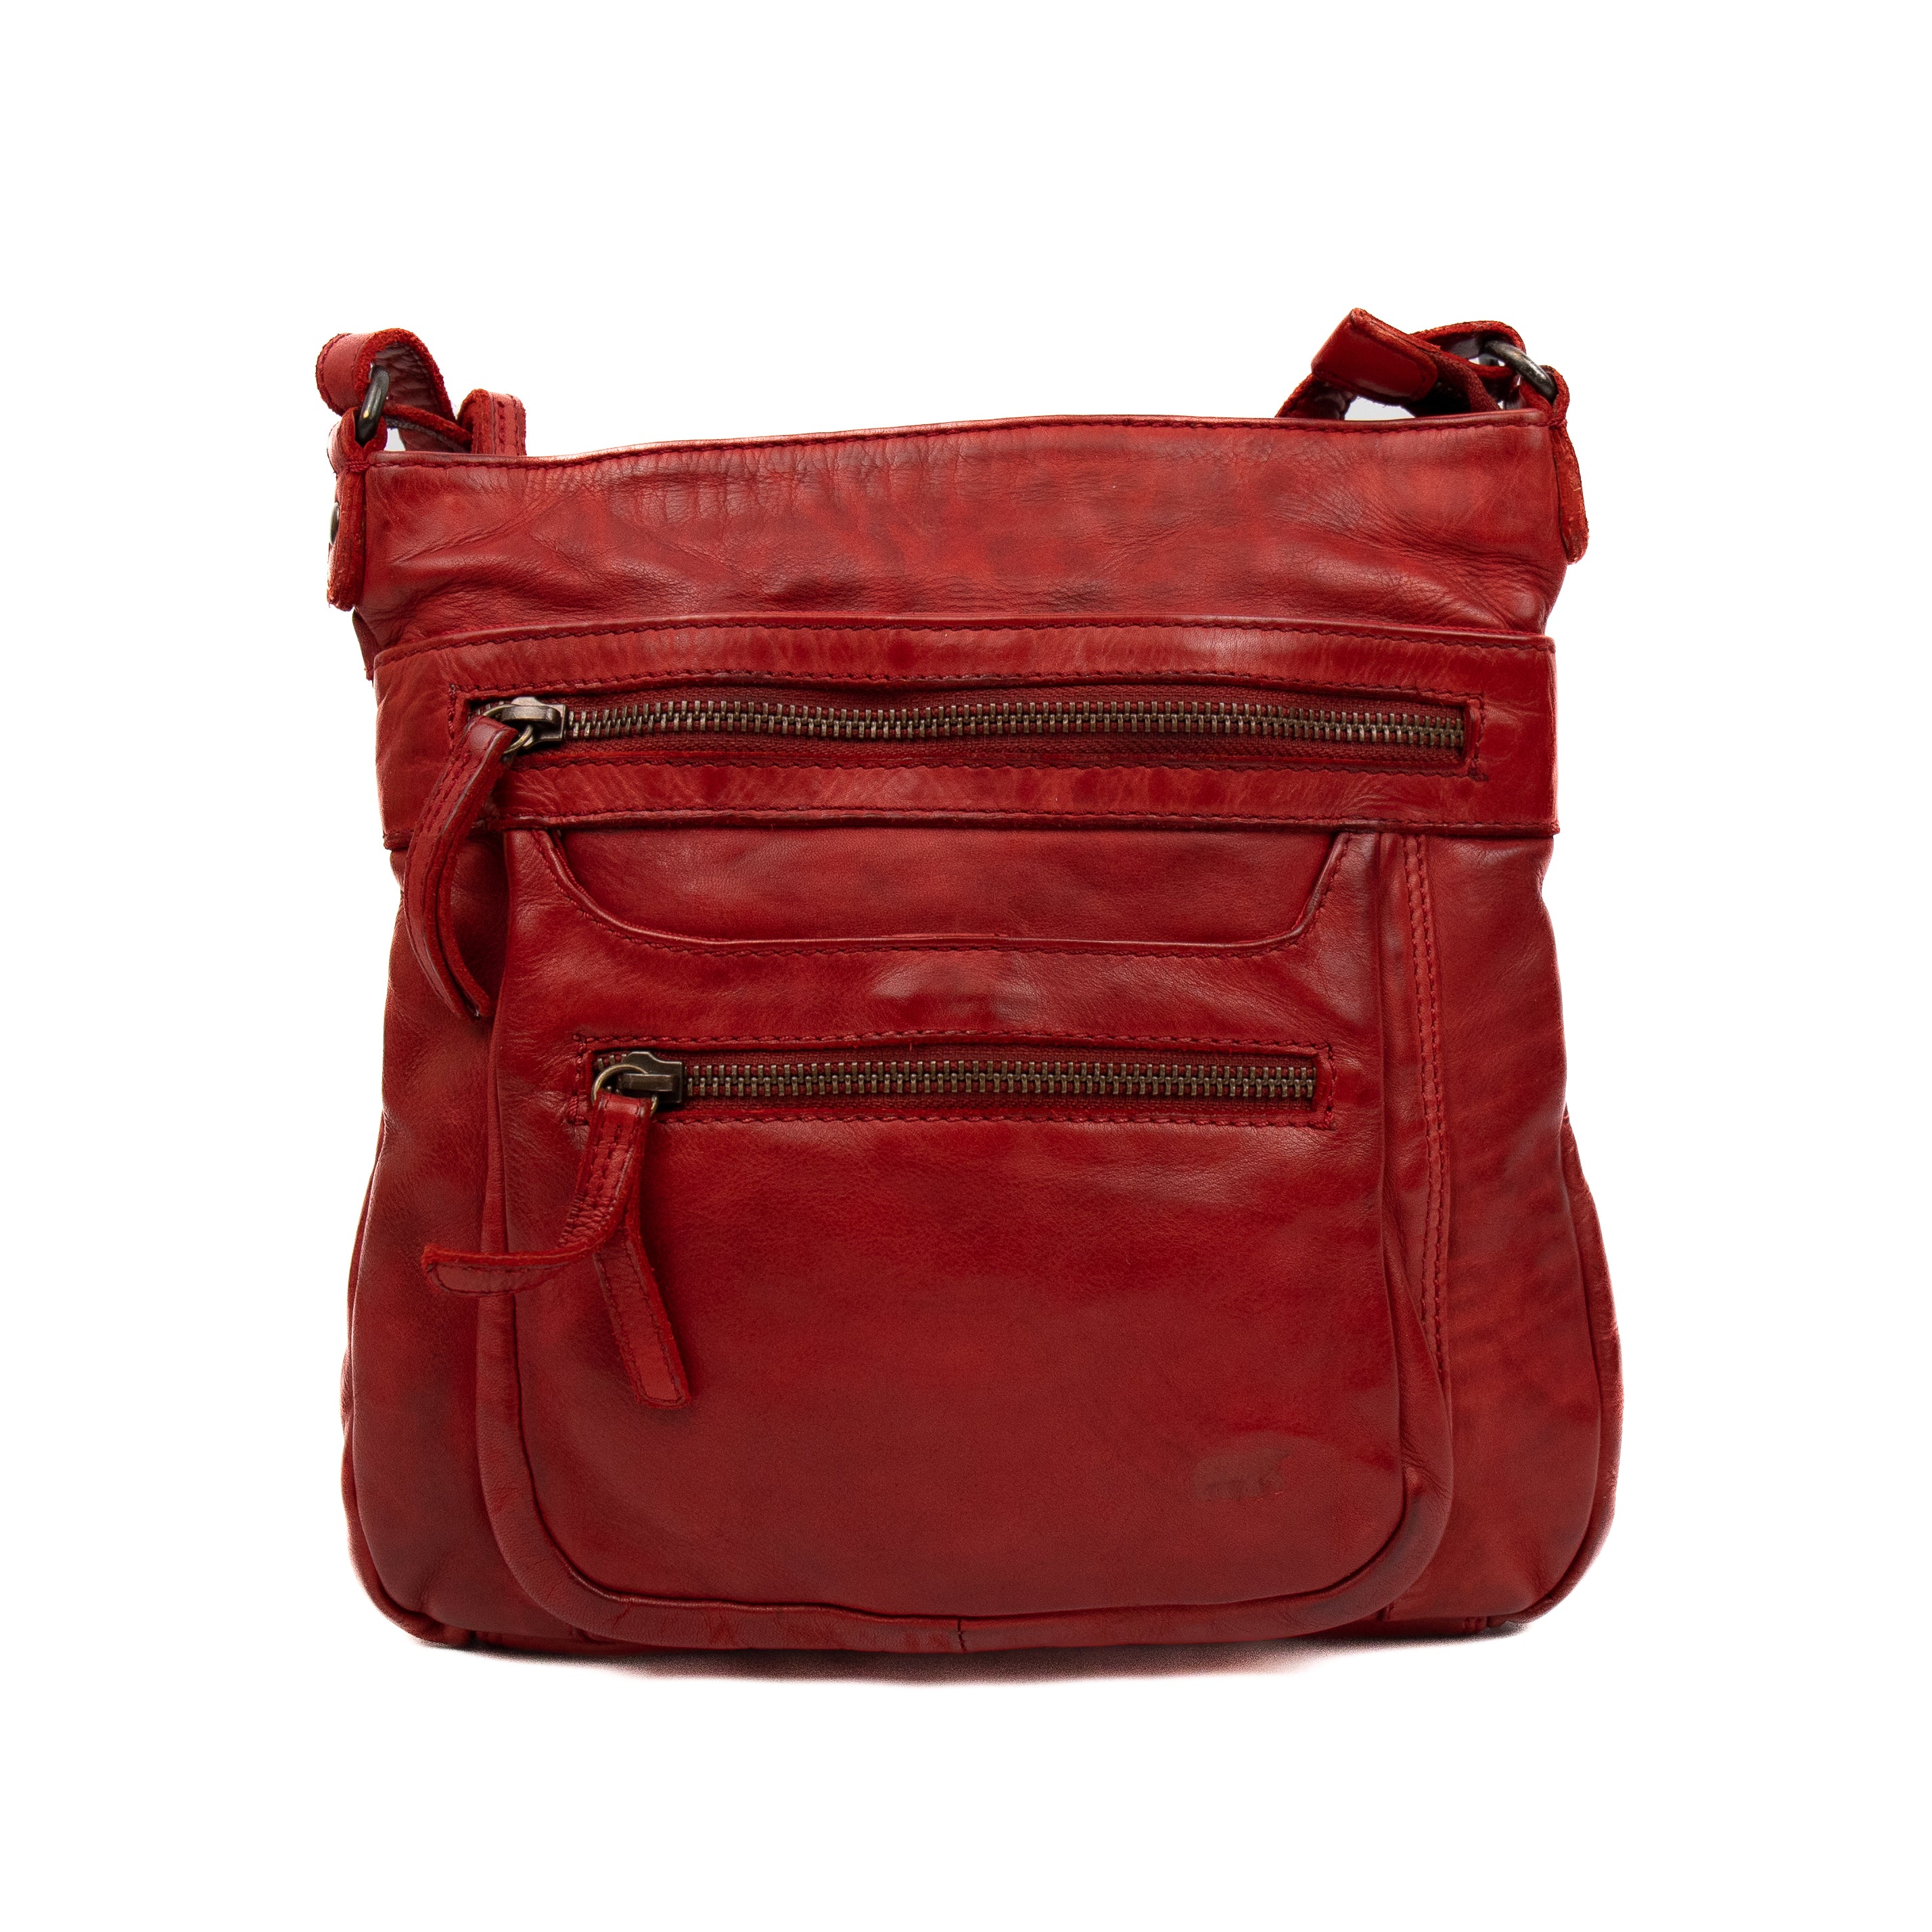 Shoulder bag 'Marion' red - CL 40496